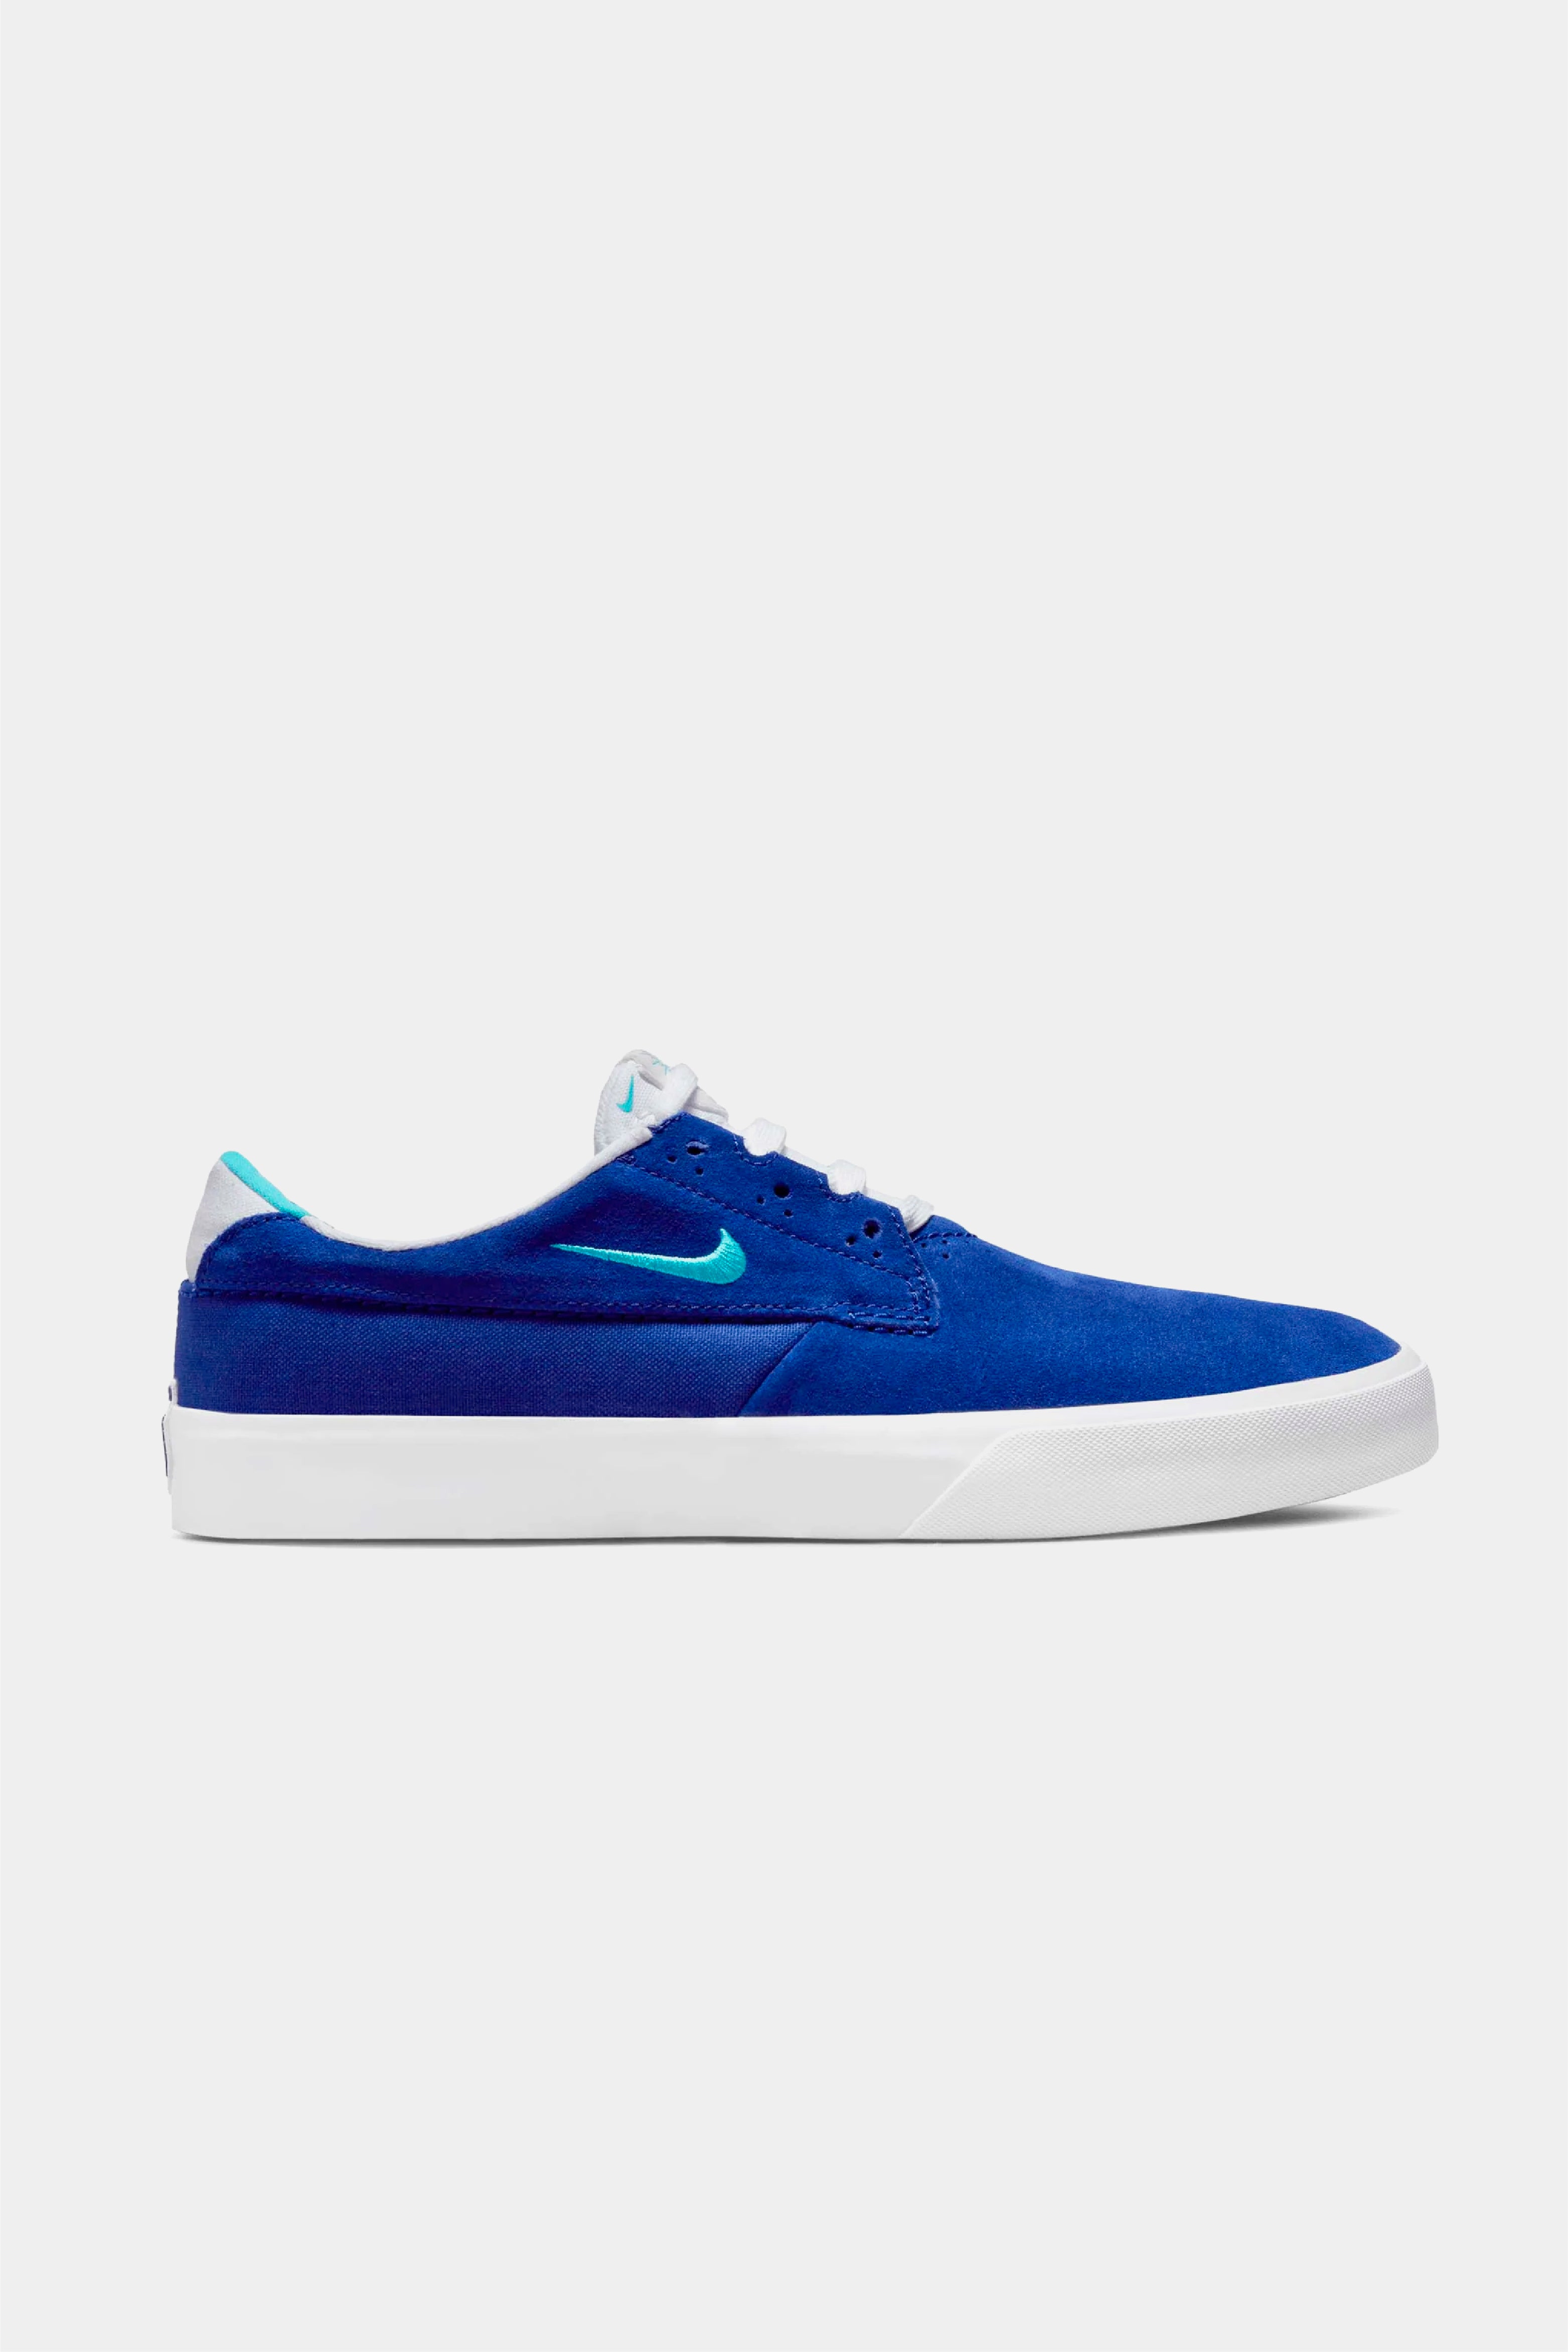 Selectshop FRAME - NIKE SB Nike SB Shane Concord/Turquoise Blue Concord Footwear Dubai